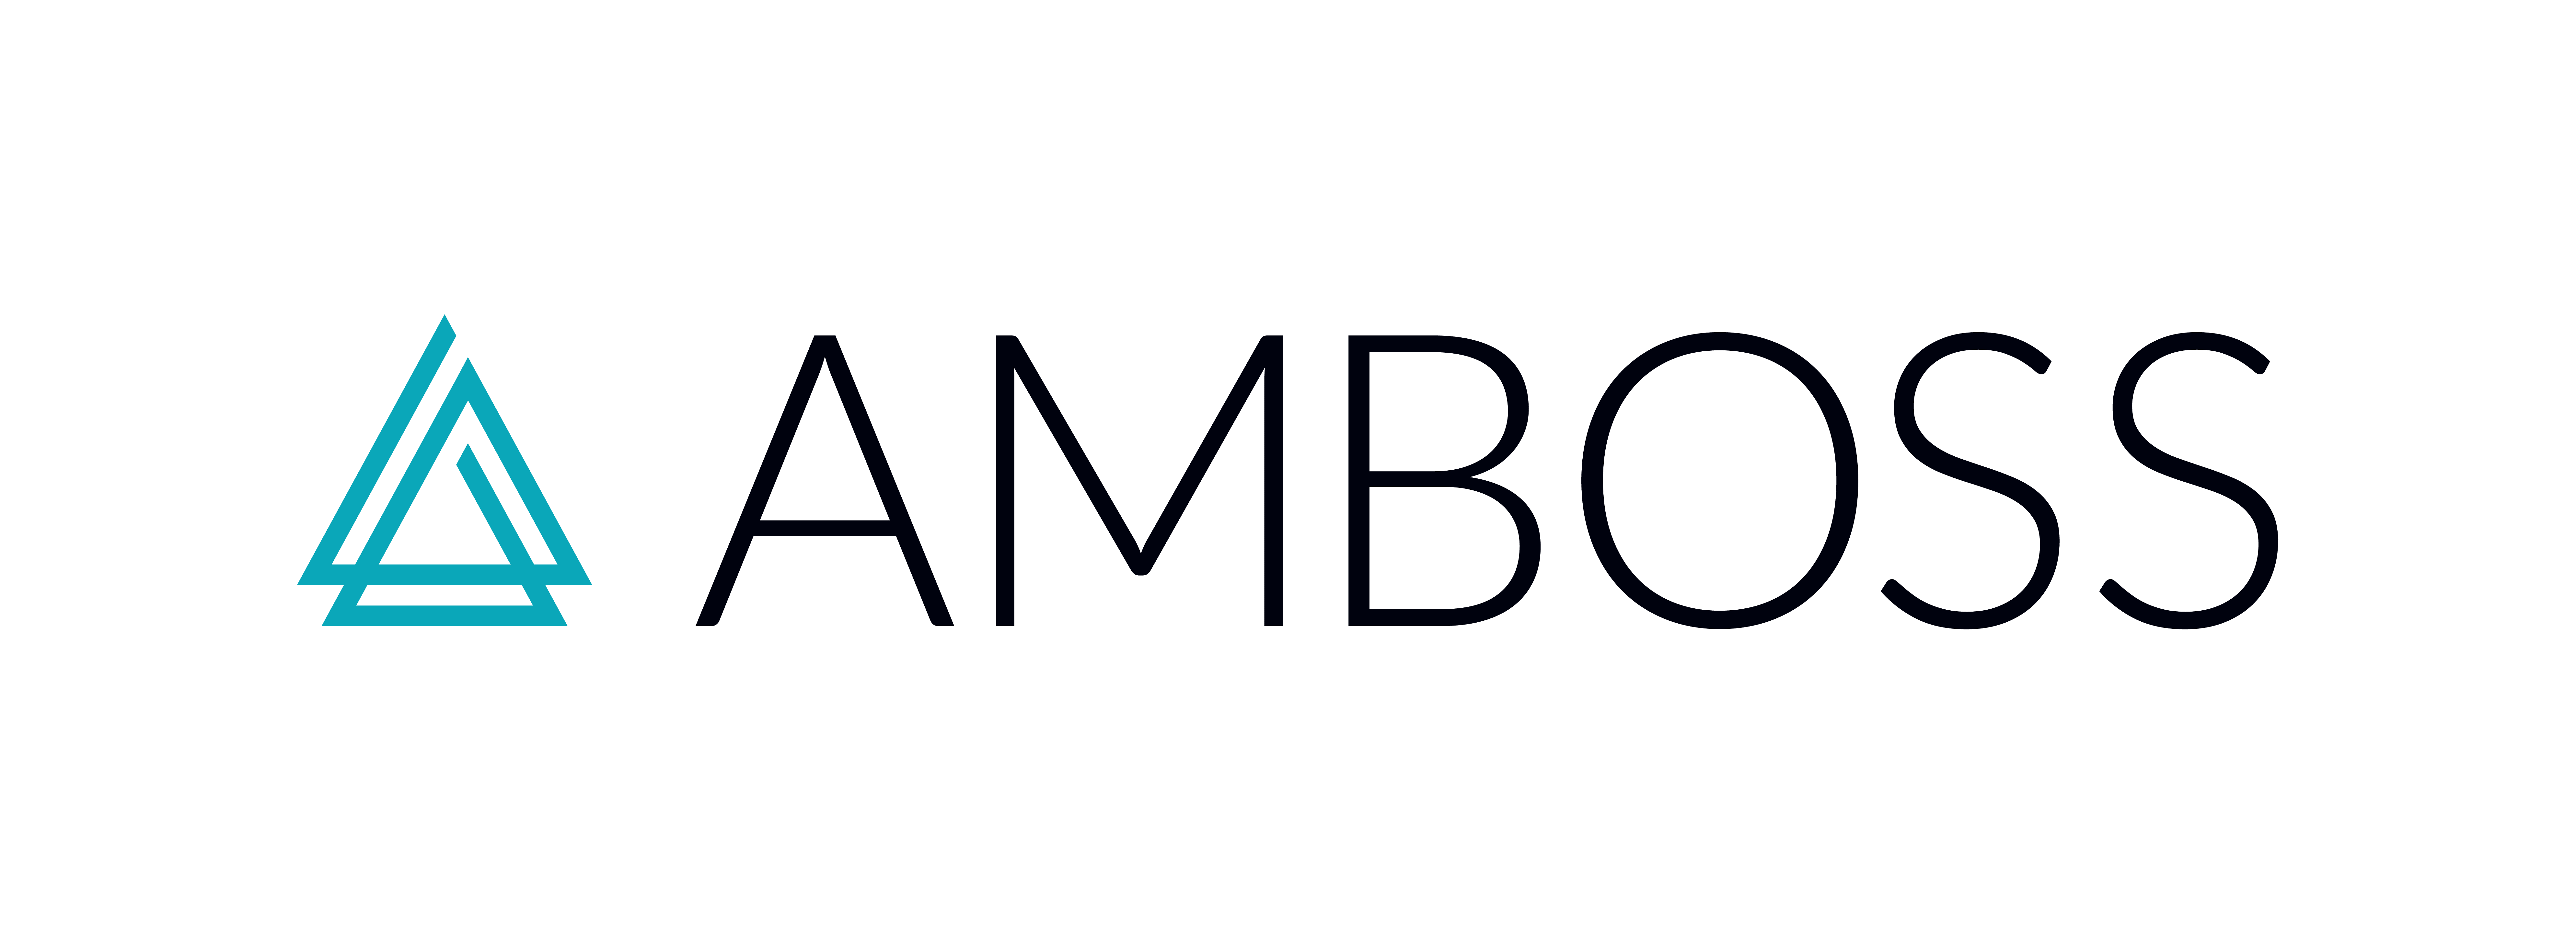 AMBOSS-Logo